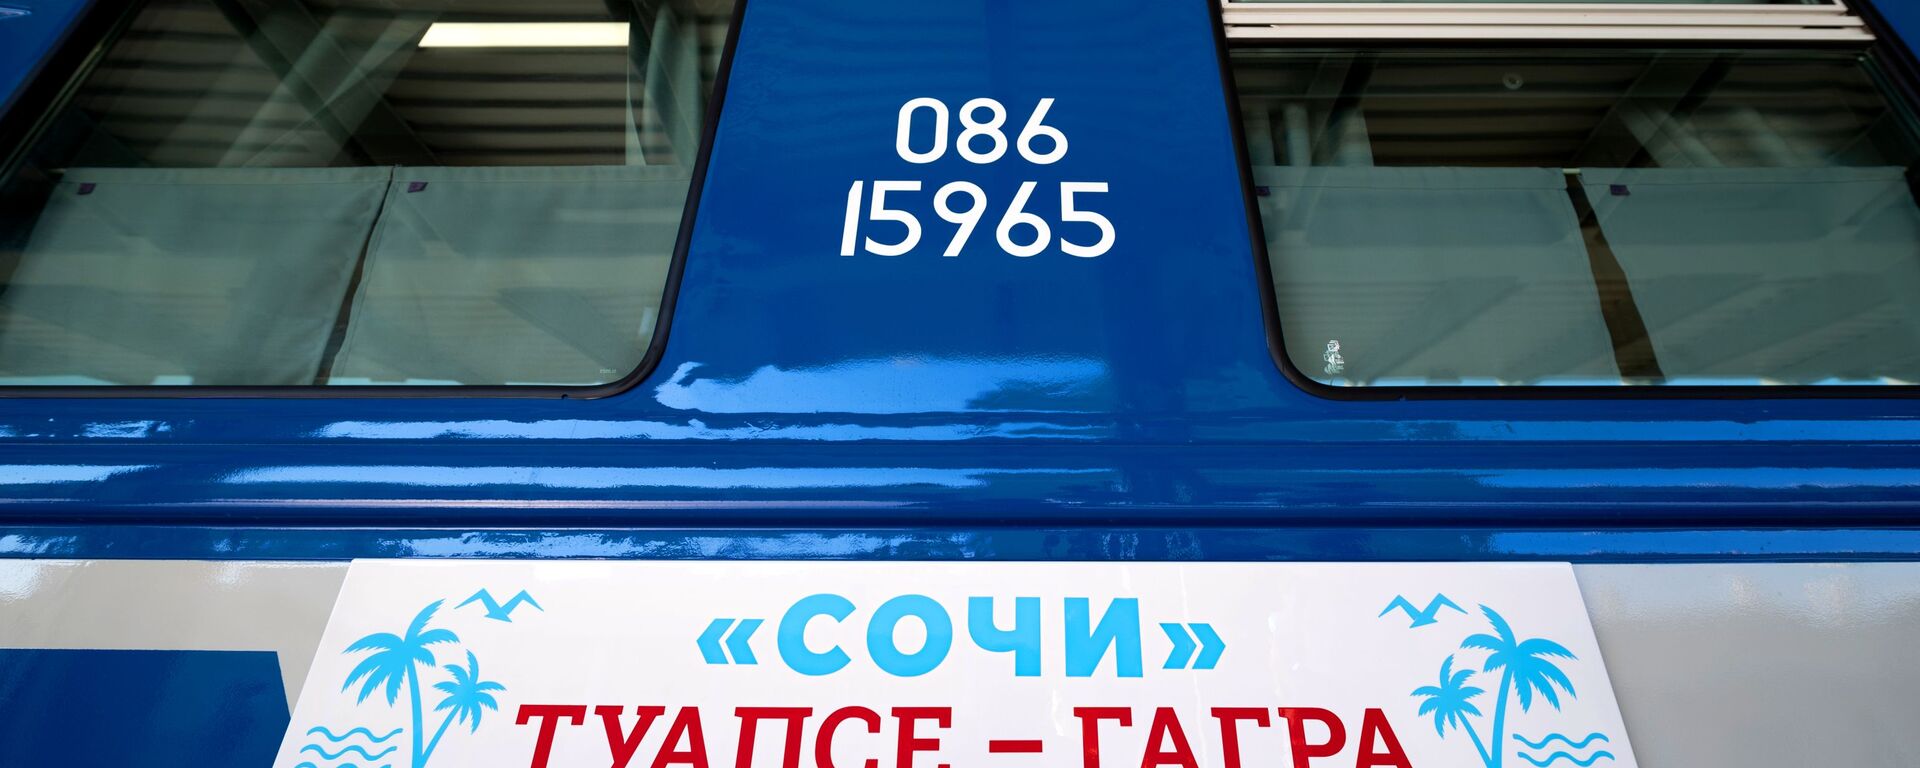 Новый туристический поезд Сочи - Sputnik Абхазия, 1920, 02.04.2022